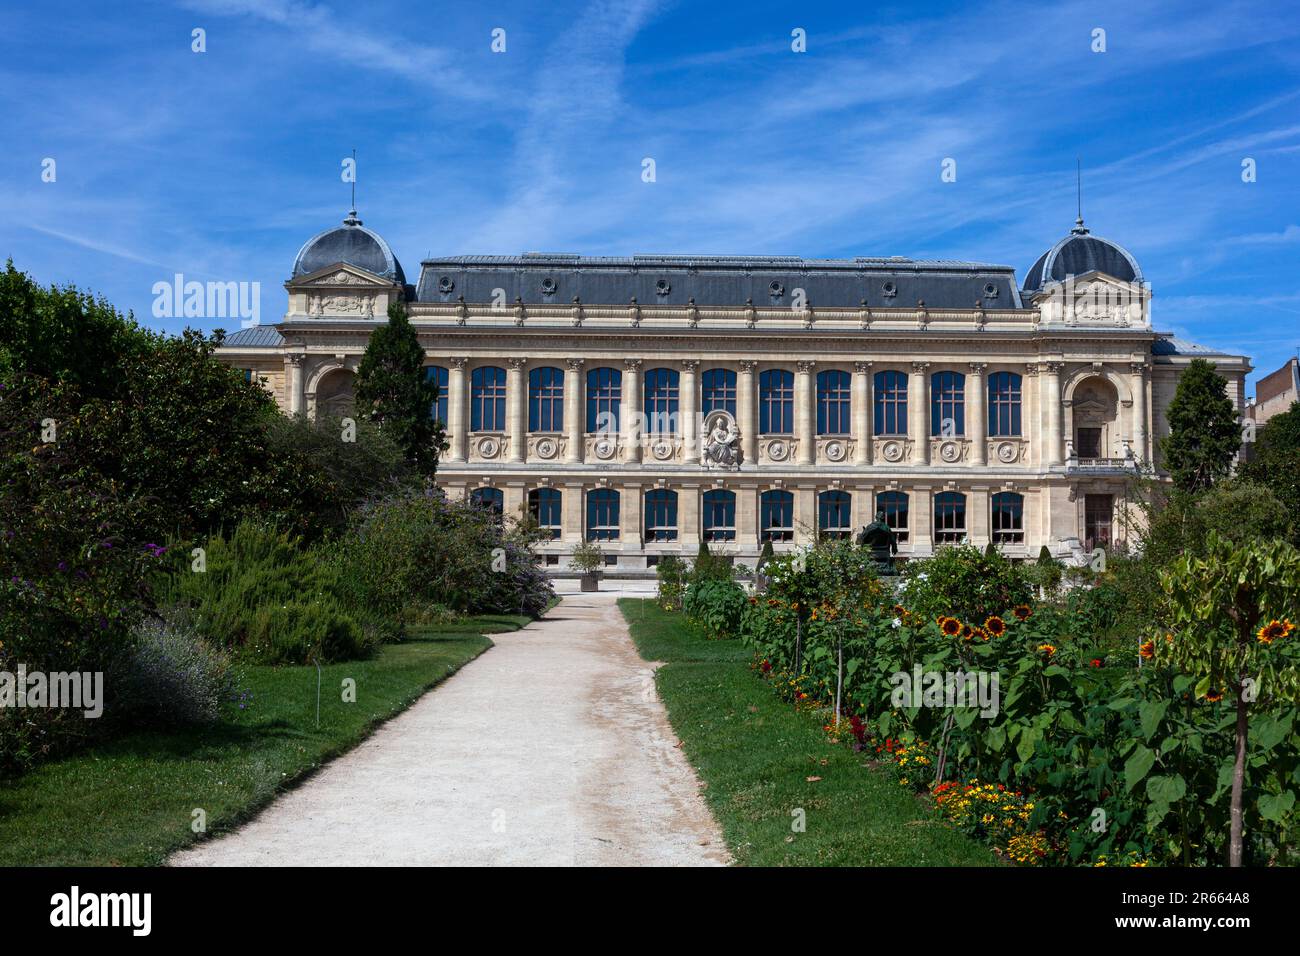 Das Museum für Naturkunde befindet sich in der Grande Galerie de l'Evolution im Jardin des Plantes, dem riesigen botanischen Garten der Stadt Paris Stockfoto